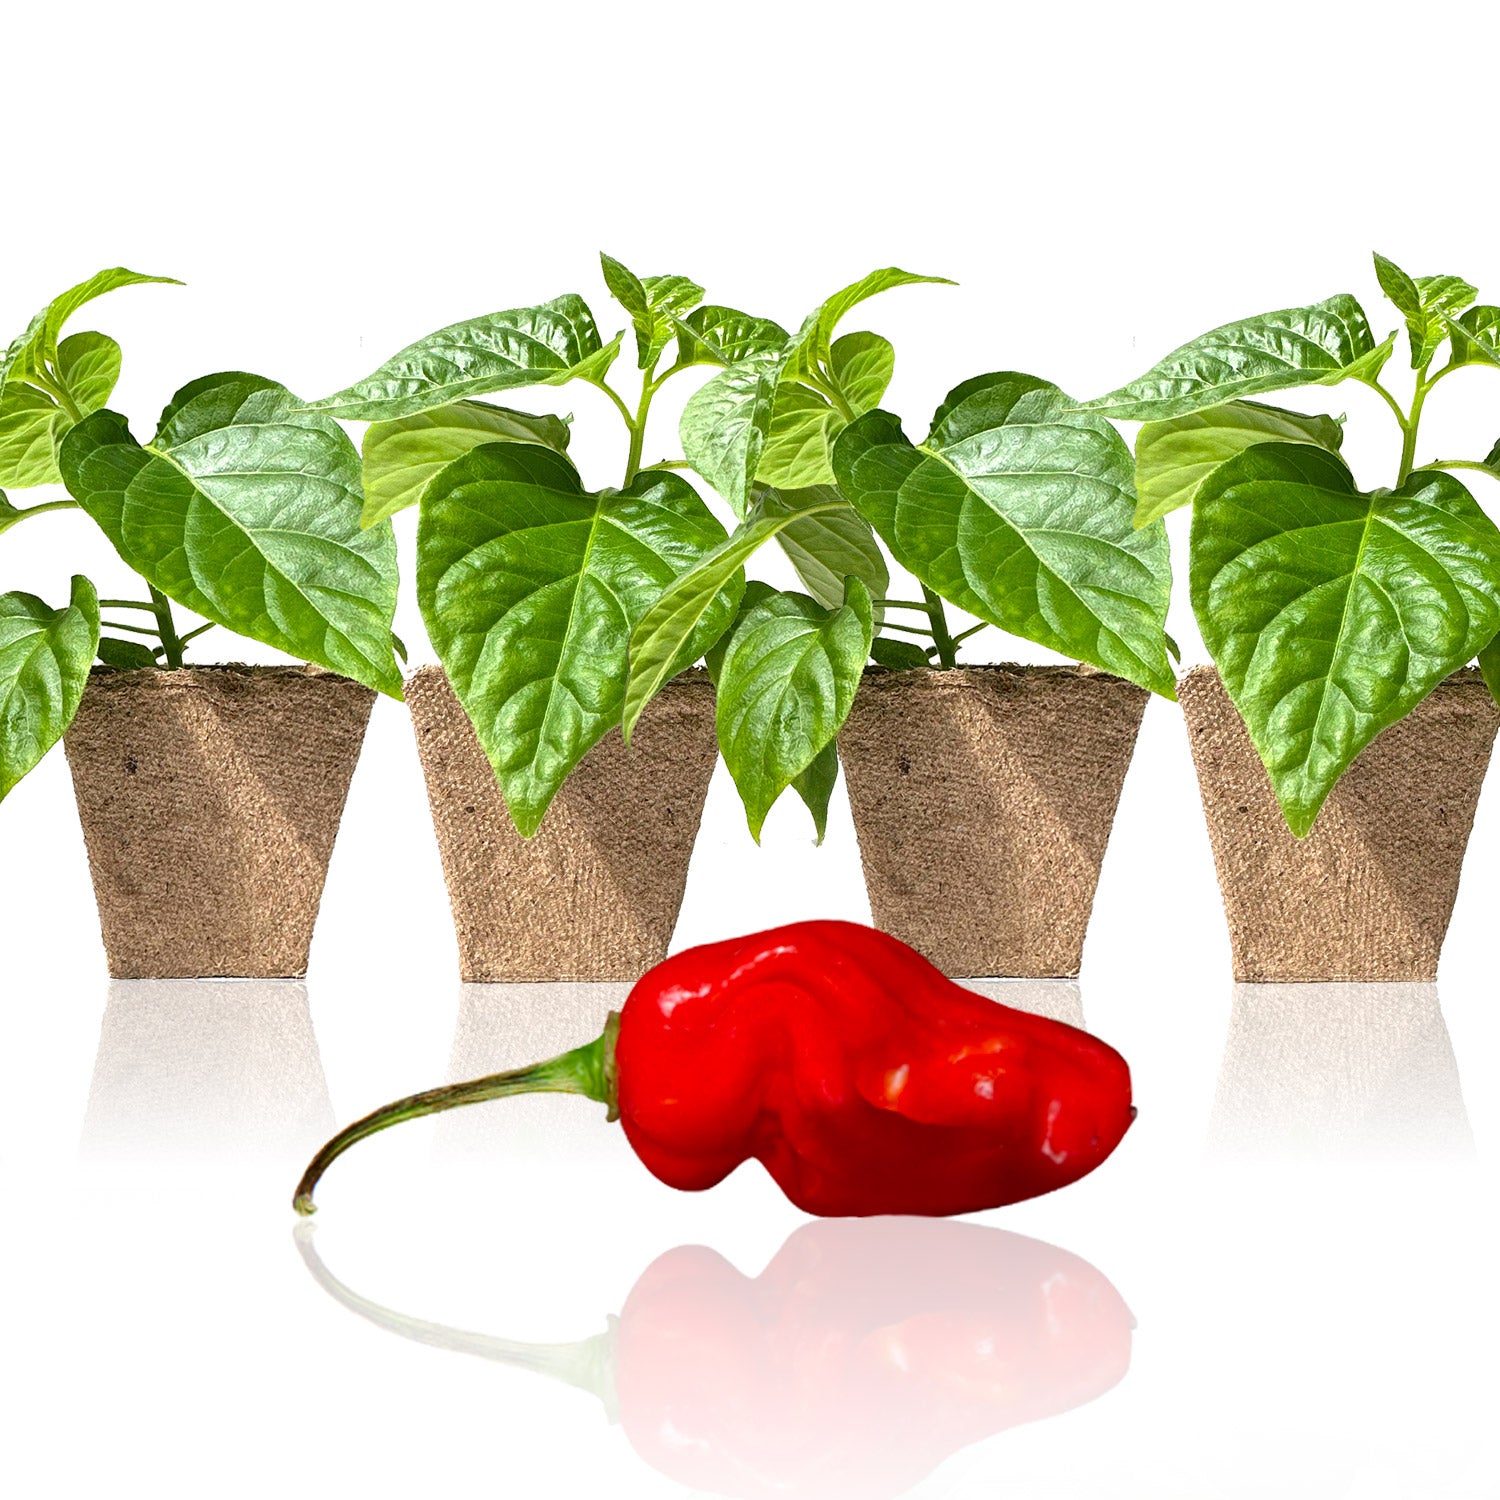 Pepper Joe's Red Devil's Tongue seedlings for sale